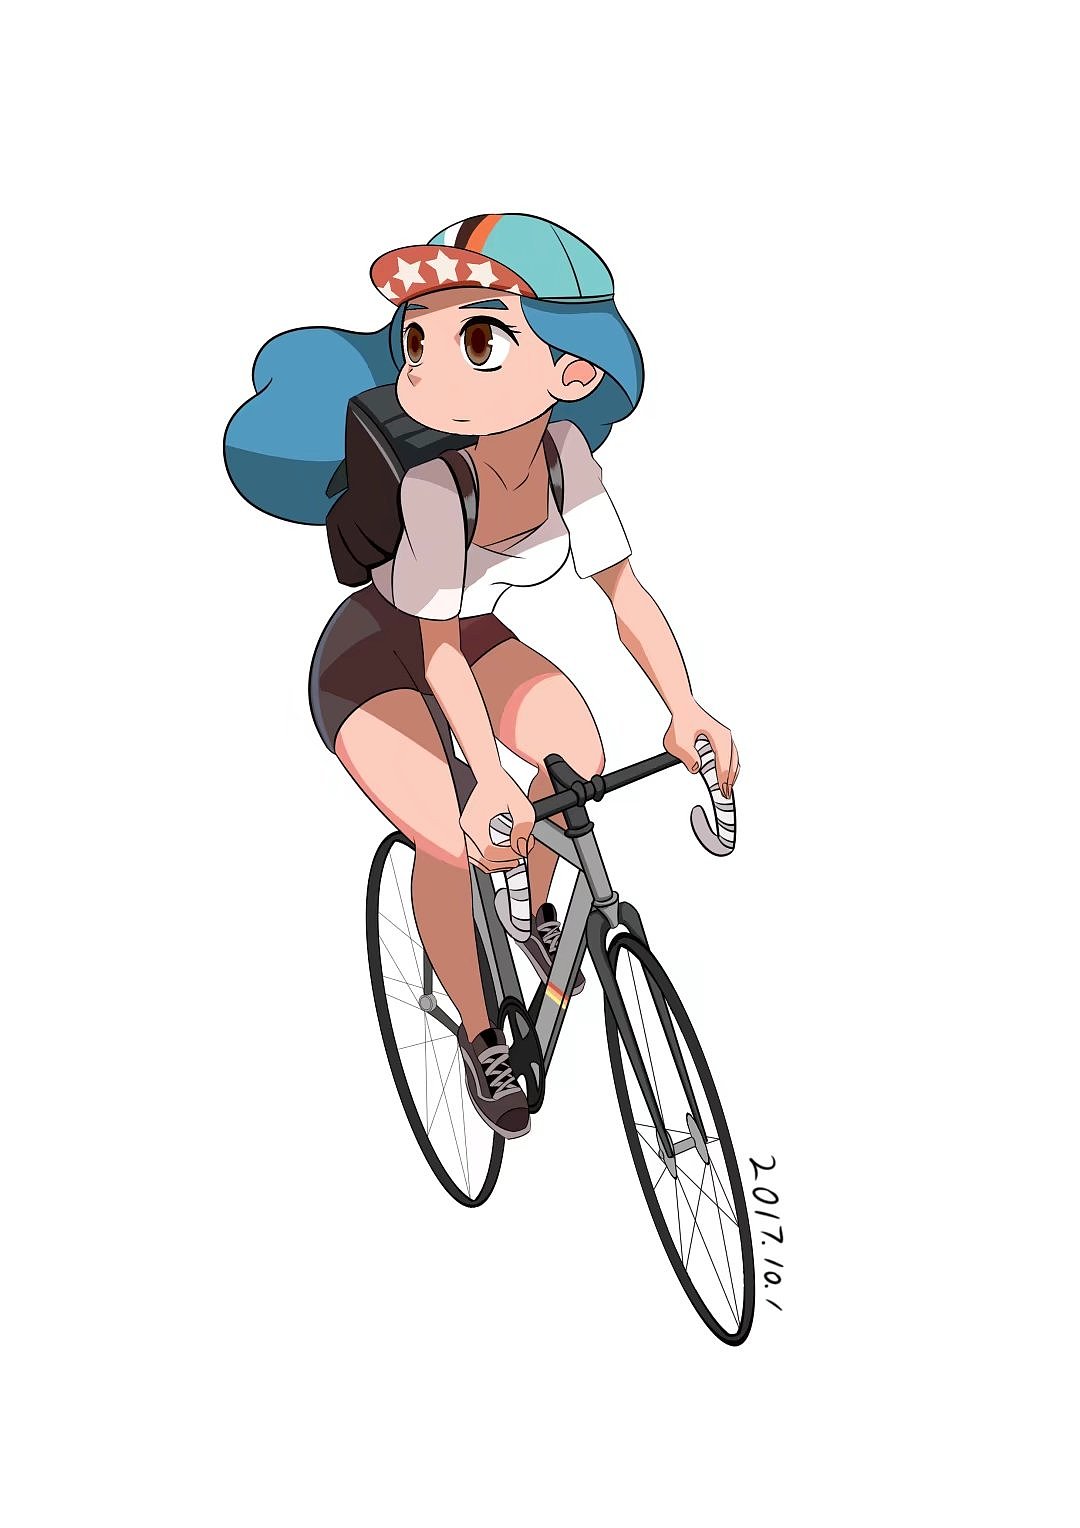 自行车插画素材-自行车插画模板-自行车插画图片免费下载-设图网